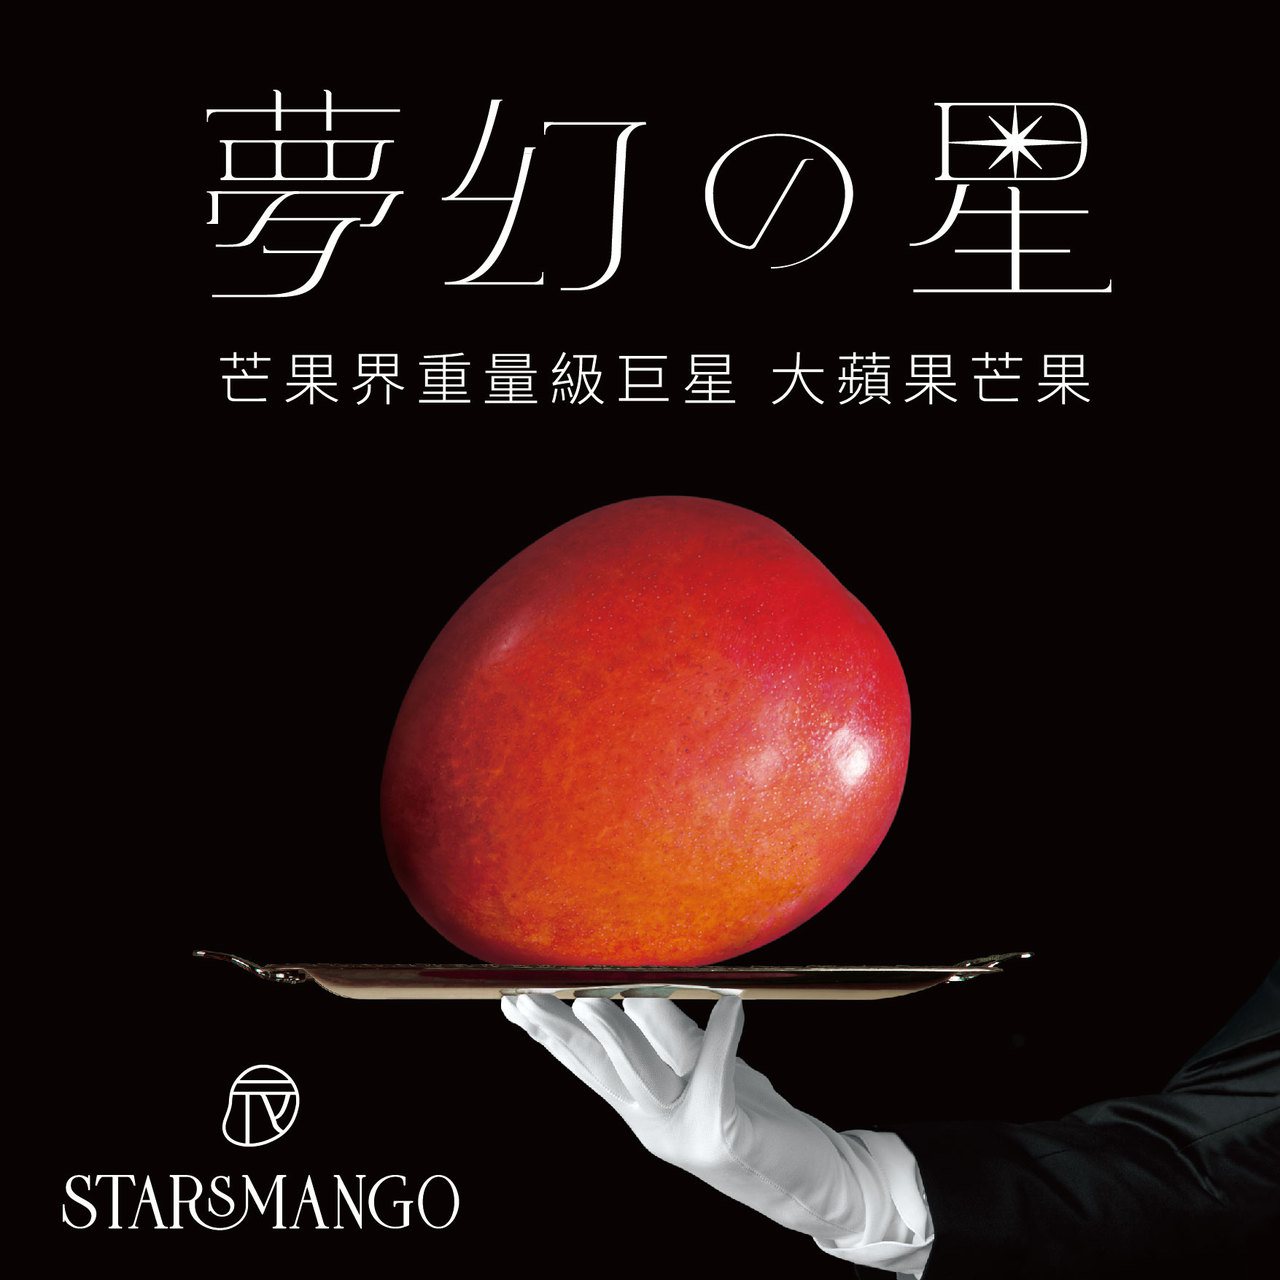 微風超市今夏推出全台最大、來自台南的新品種「大蘋果芒果」。 圖 / 翻攝自微風超...